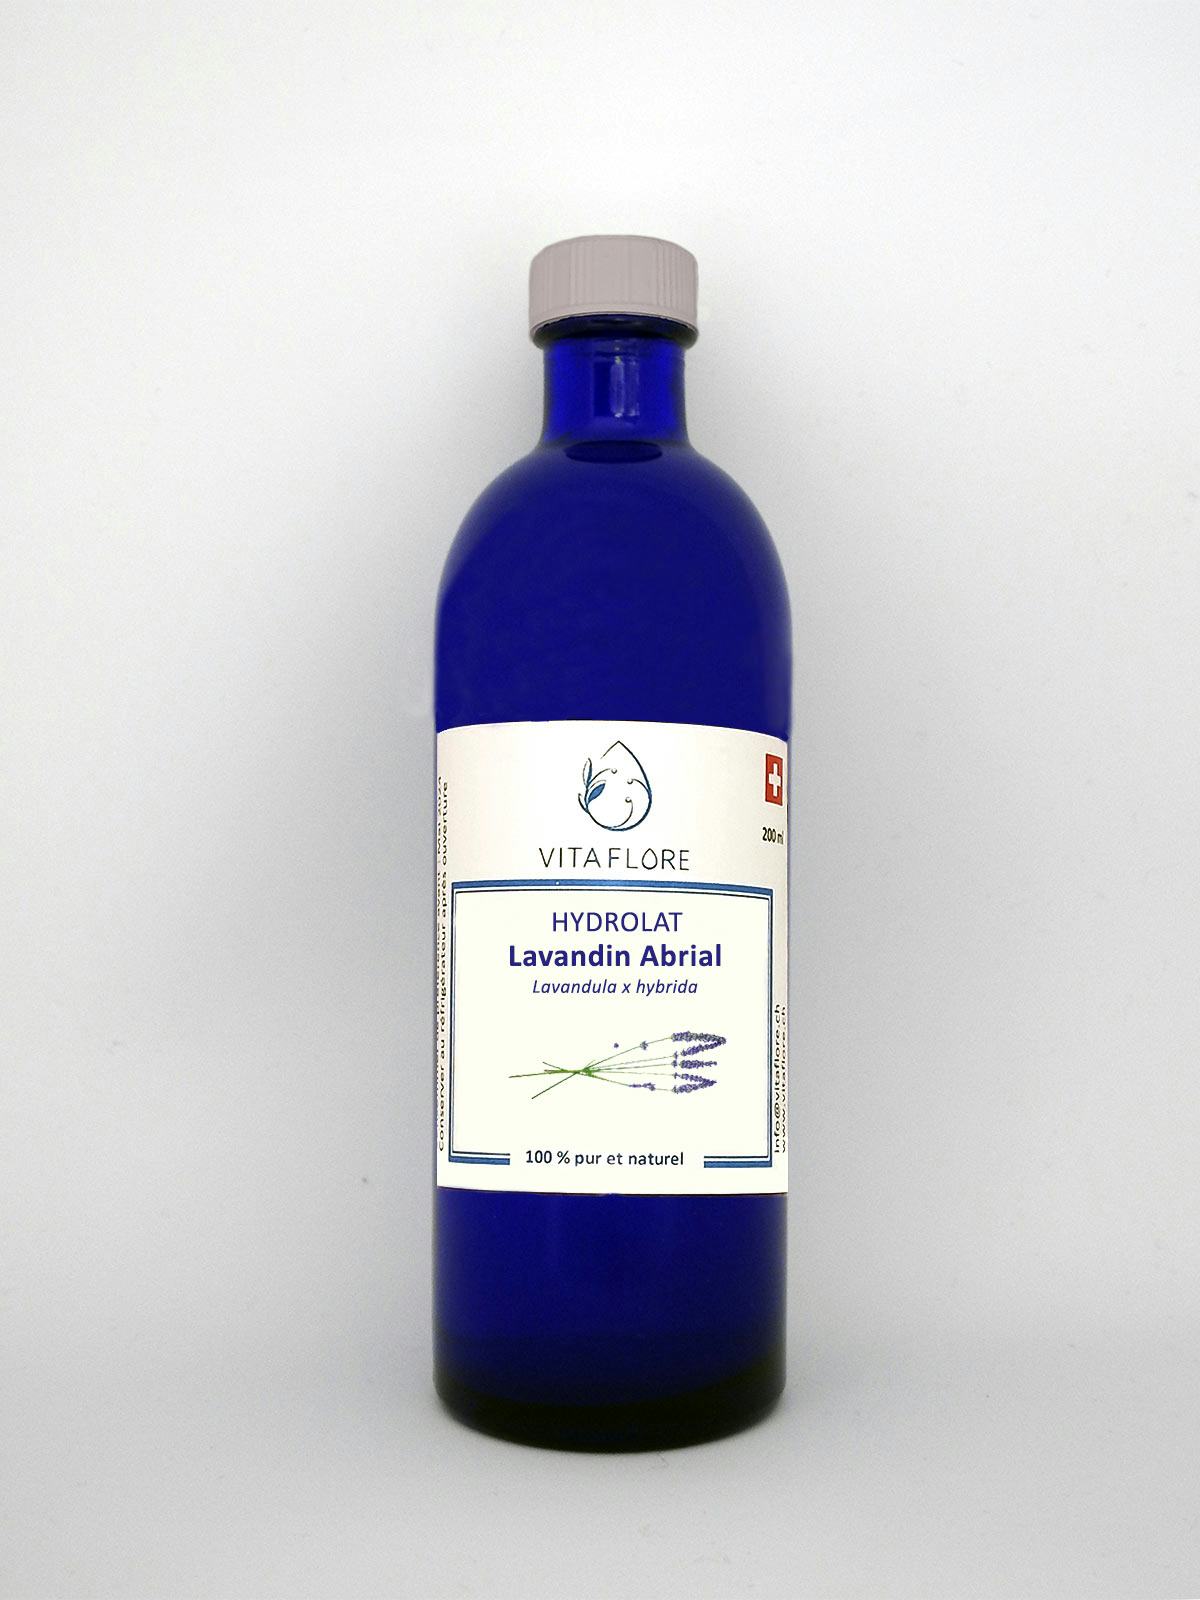 Hydrolat Lavandin Abrial, handwerkliches Produkt für den Direktverkauf in der Schweiz